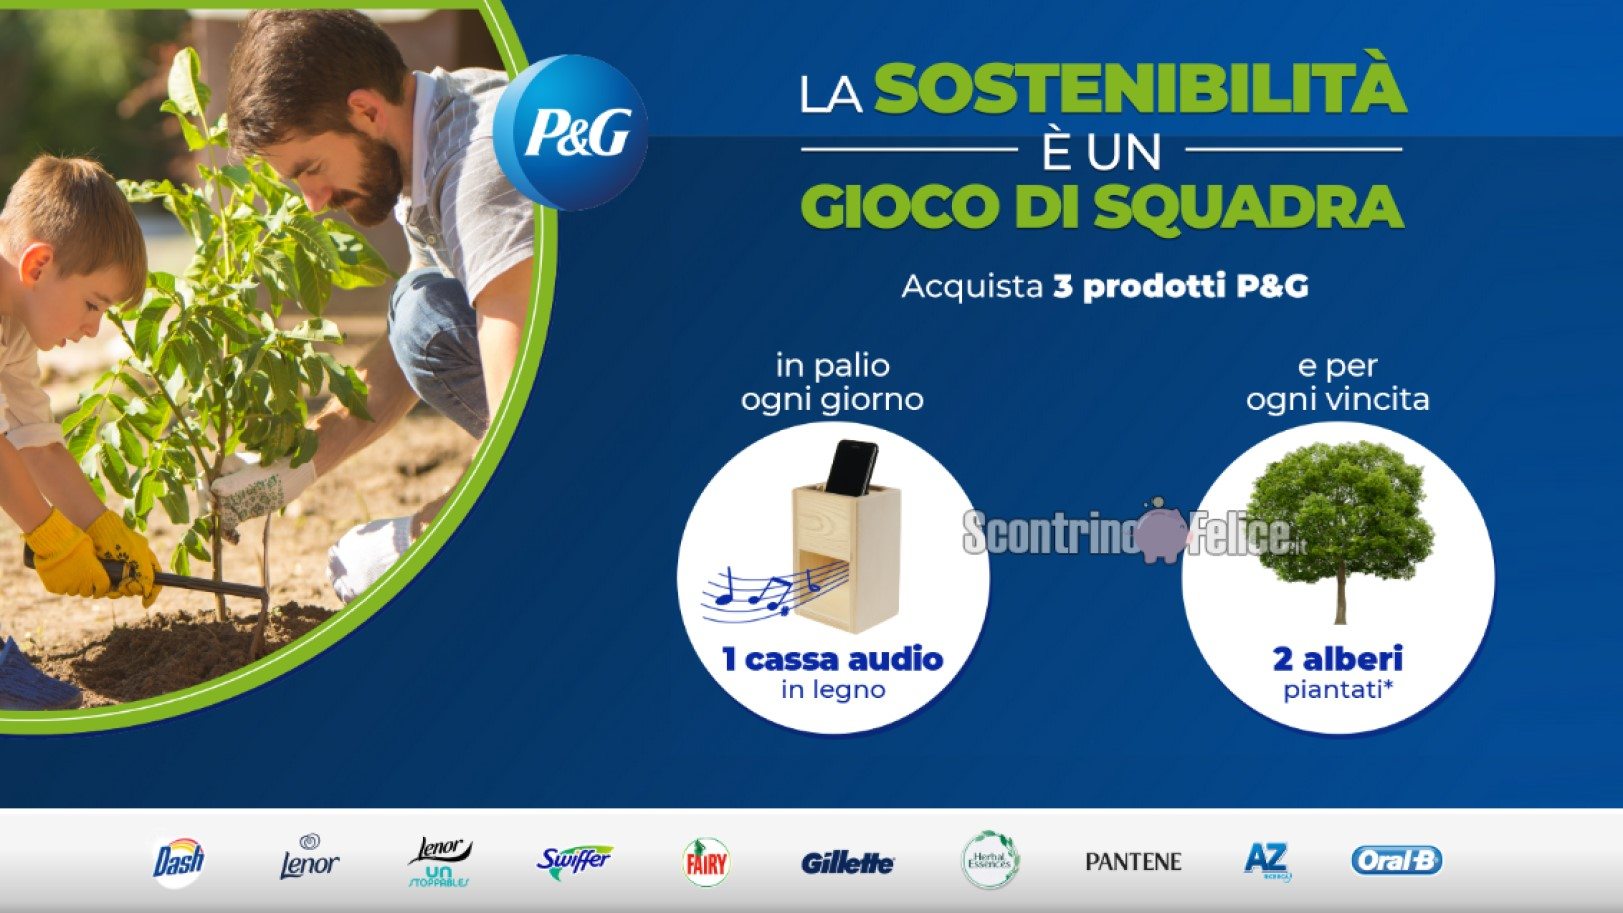 Concorso P&G La sostenibilità è un gioco di squadra da Carrefour vinci Casse audio in legno